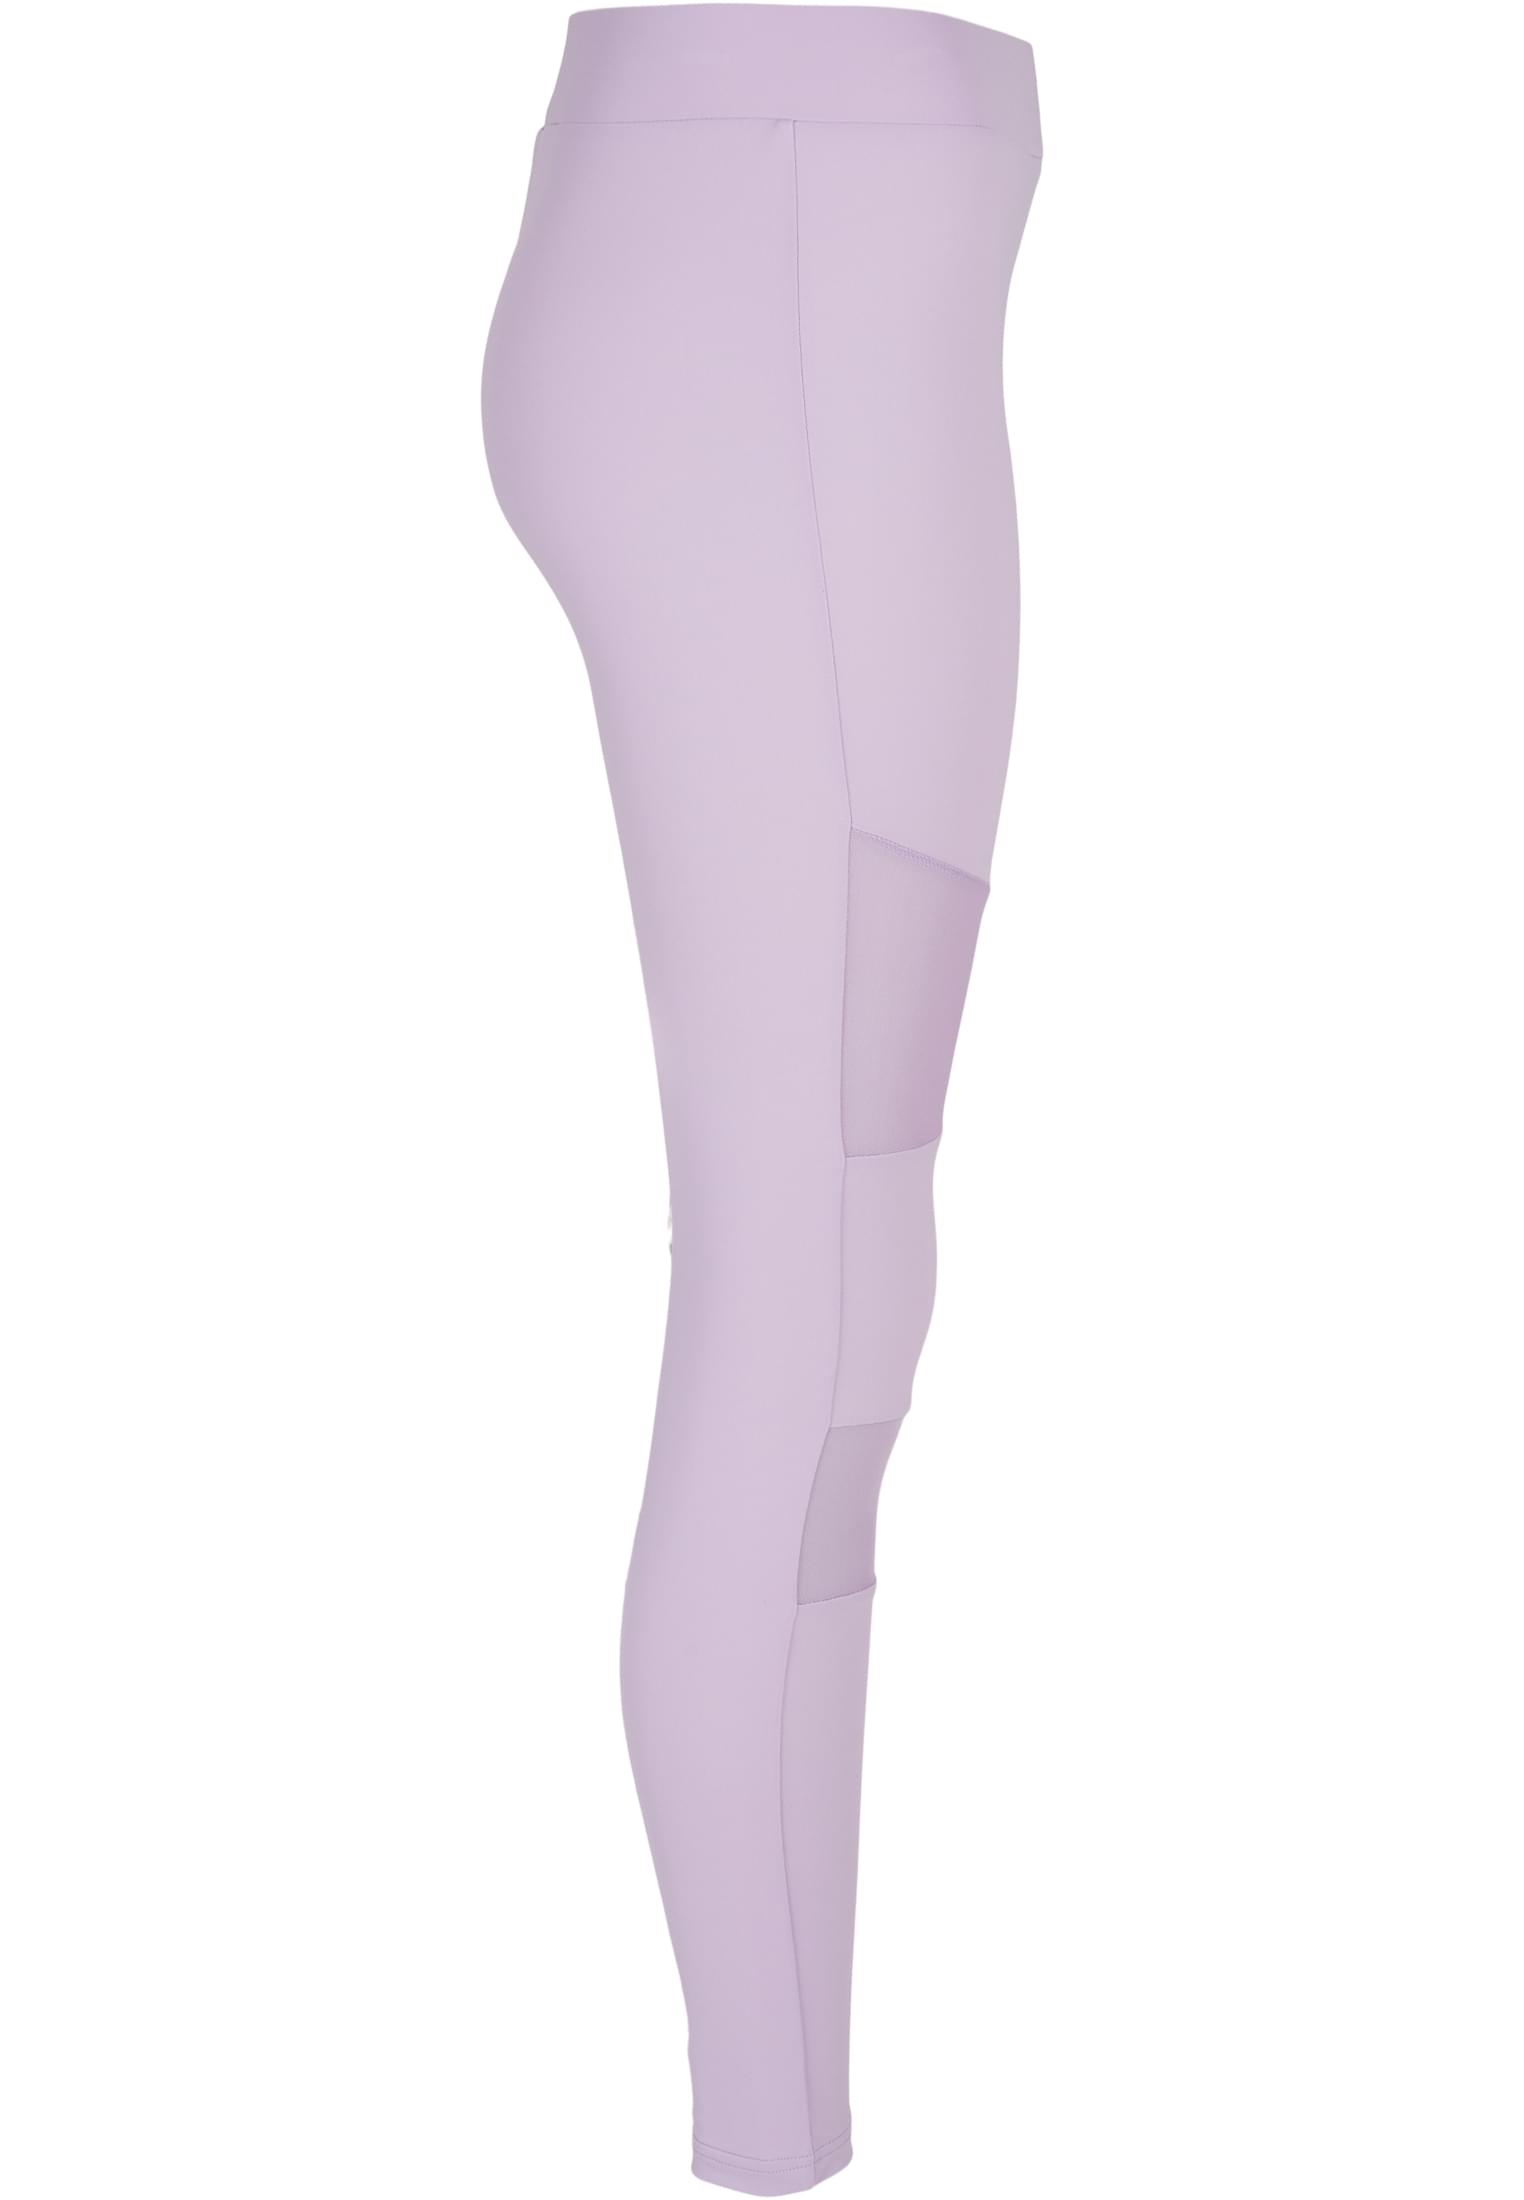 Damen Ladies Tech Mesh Leggings in Farbe lilac